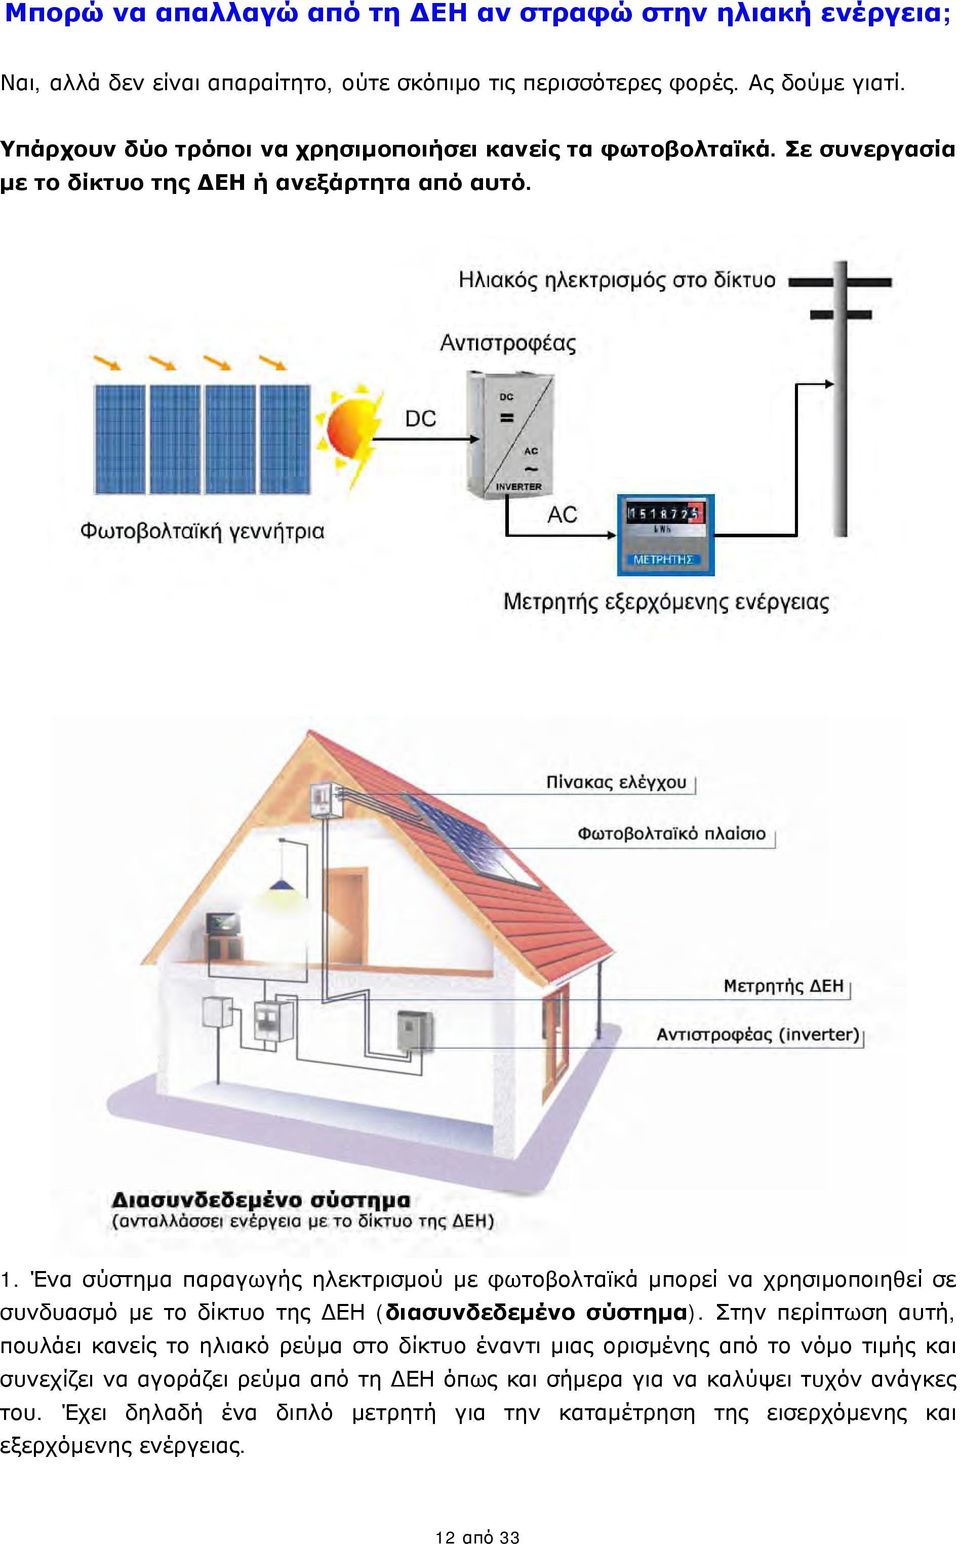 Ένα σύστημα παραγωγής ηλεκτρισμού με φωτοβολταϊκά μπορεί να χρησιμοποιηθεί σε συνδυασμό με το δίκτυο της ΔΕΗ (διασυνδεδεμένο σύστημα).